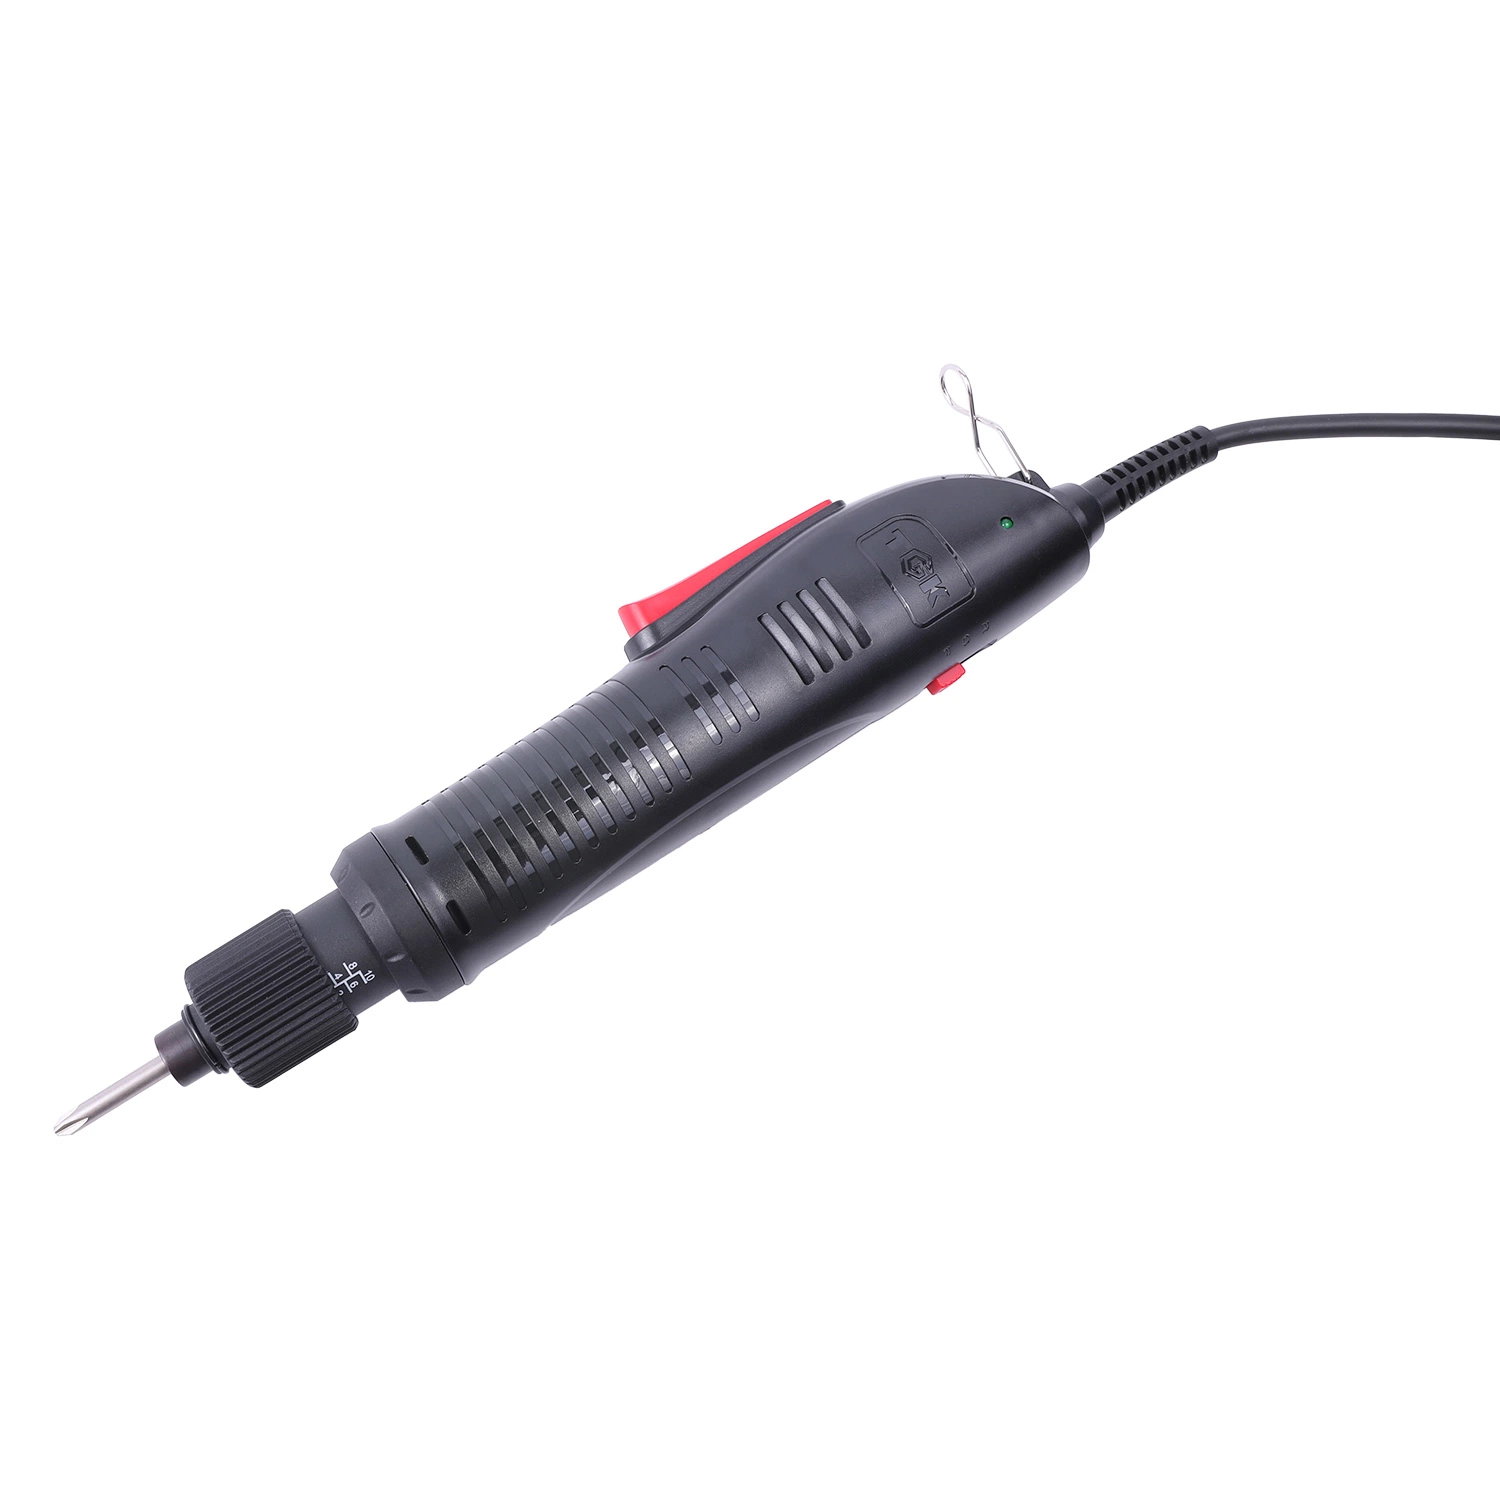 Con cable de par destornillador eléctrico para ayudar a ajustar algunos artículos del hogar PS635